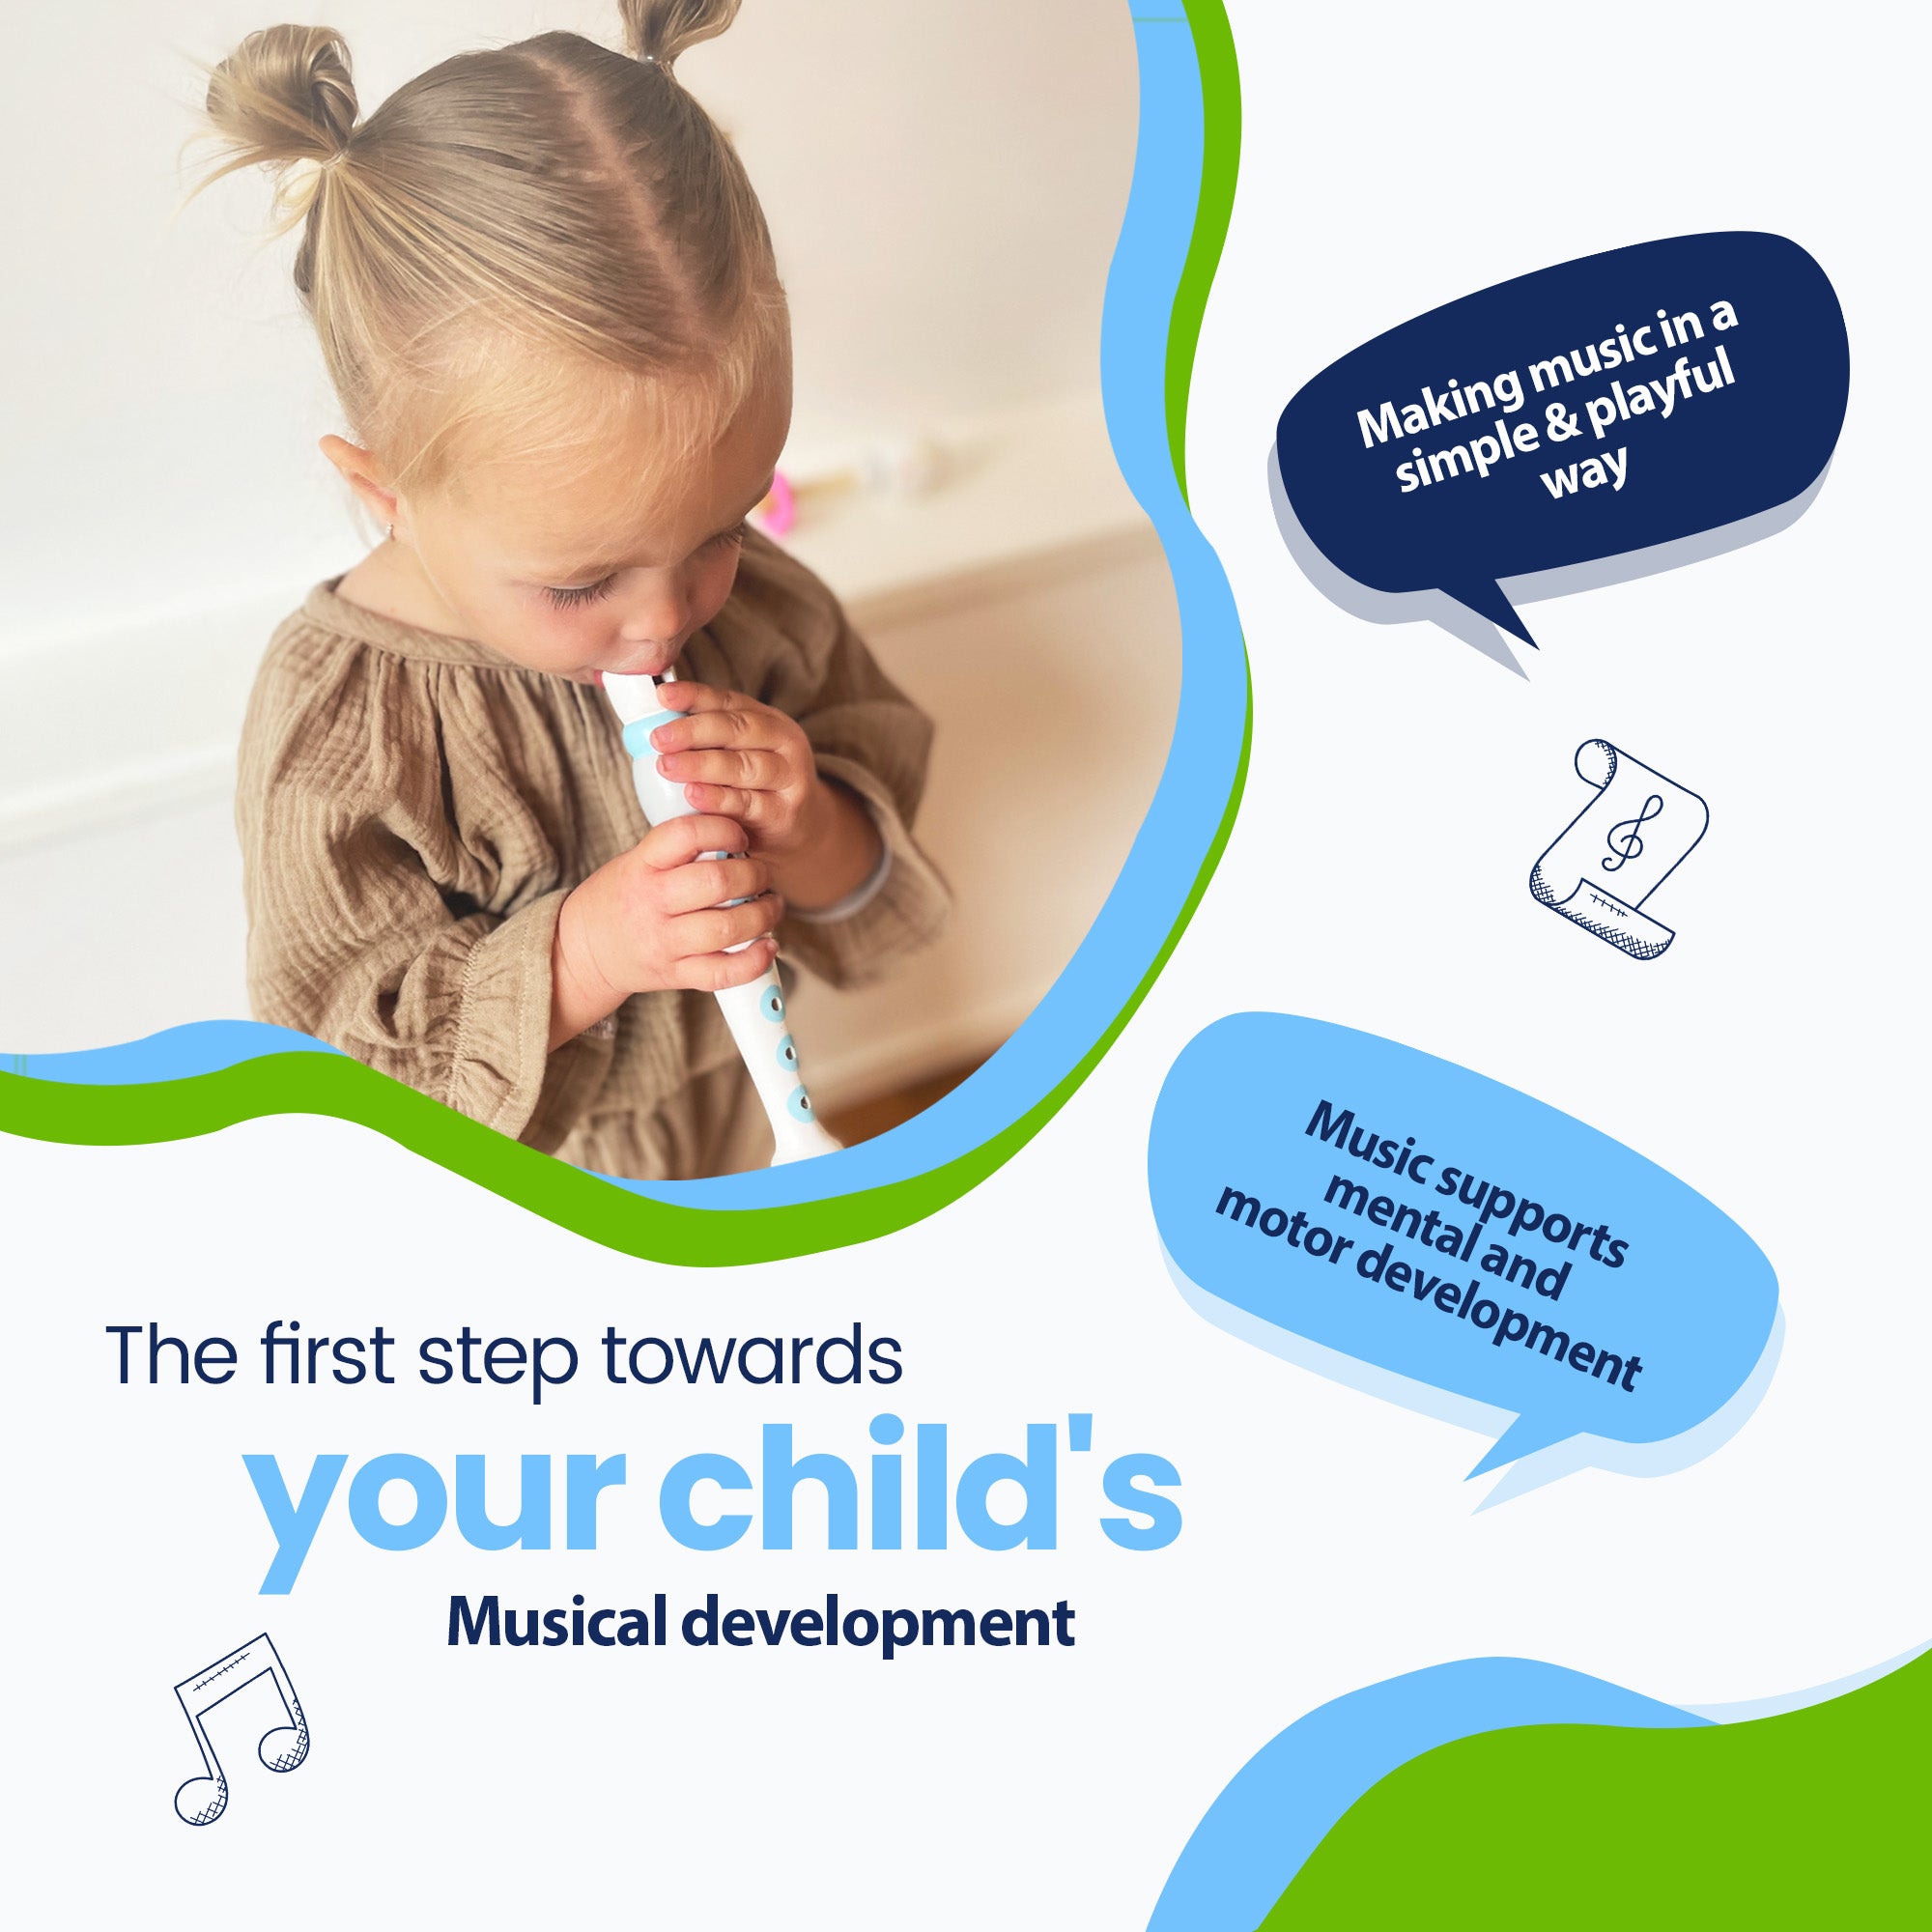 Pierwszy krok w kierunku muzycznego rozwoju Twojego dziecka - Tworzenie muzyki w prosty i zabawny sposób - Muzyka wspiera rozwój umysłowy i motoryczny